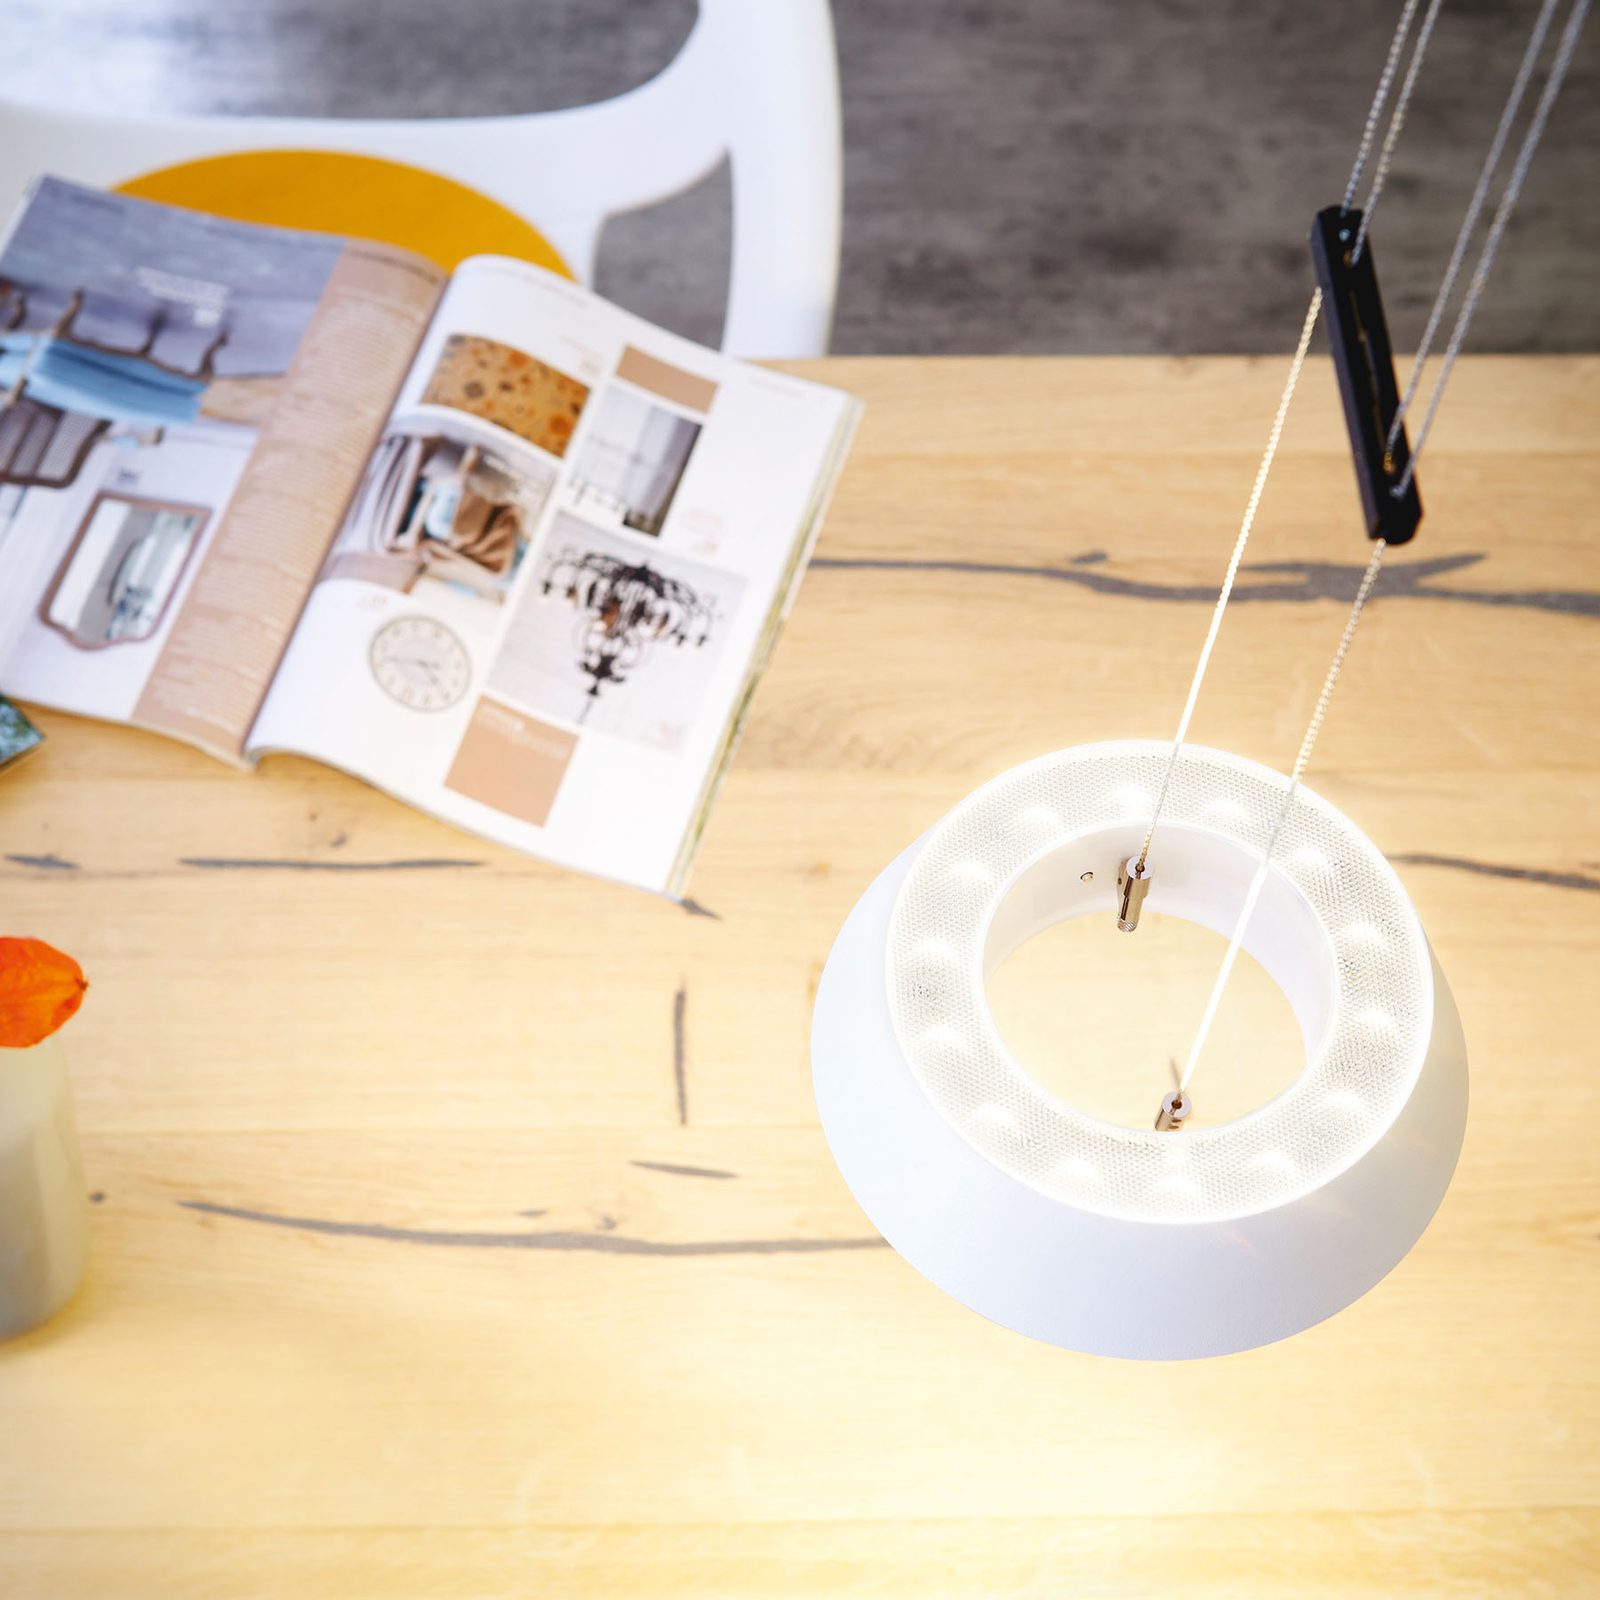 OLIGO Glance LED-Pendellampe einflammig weiß matt